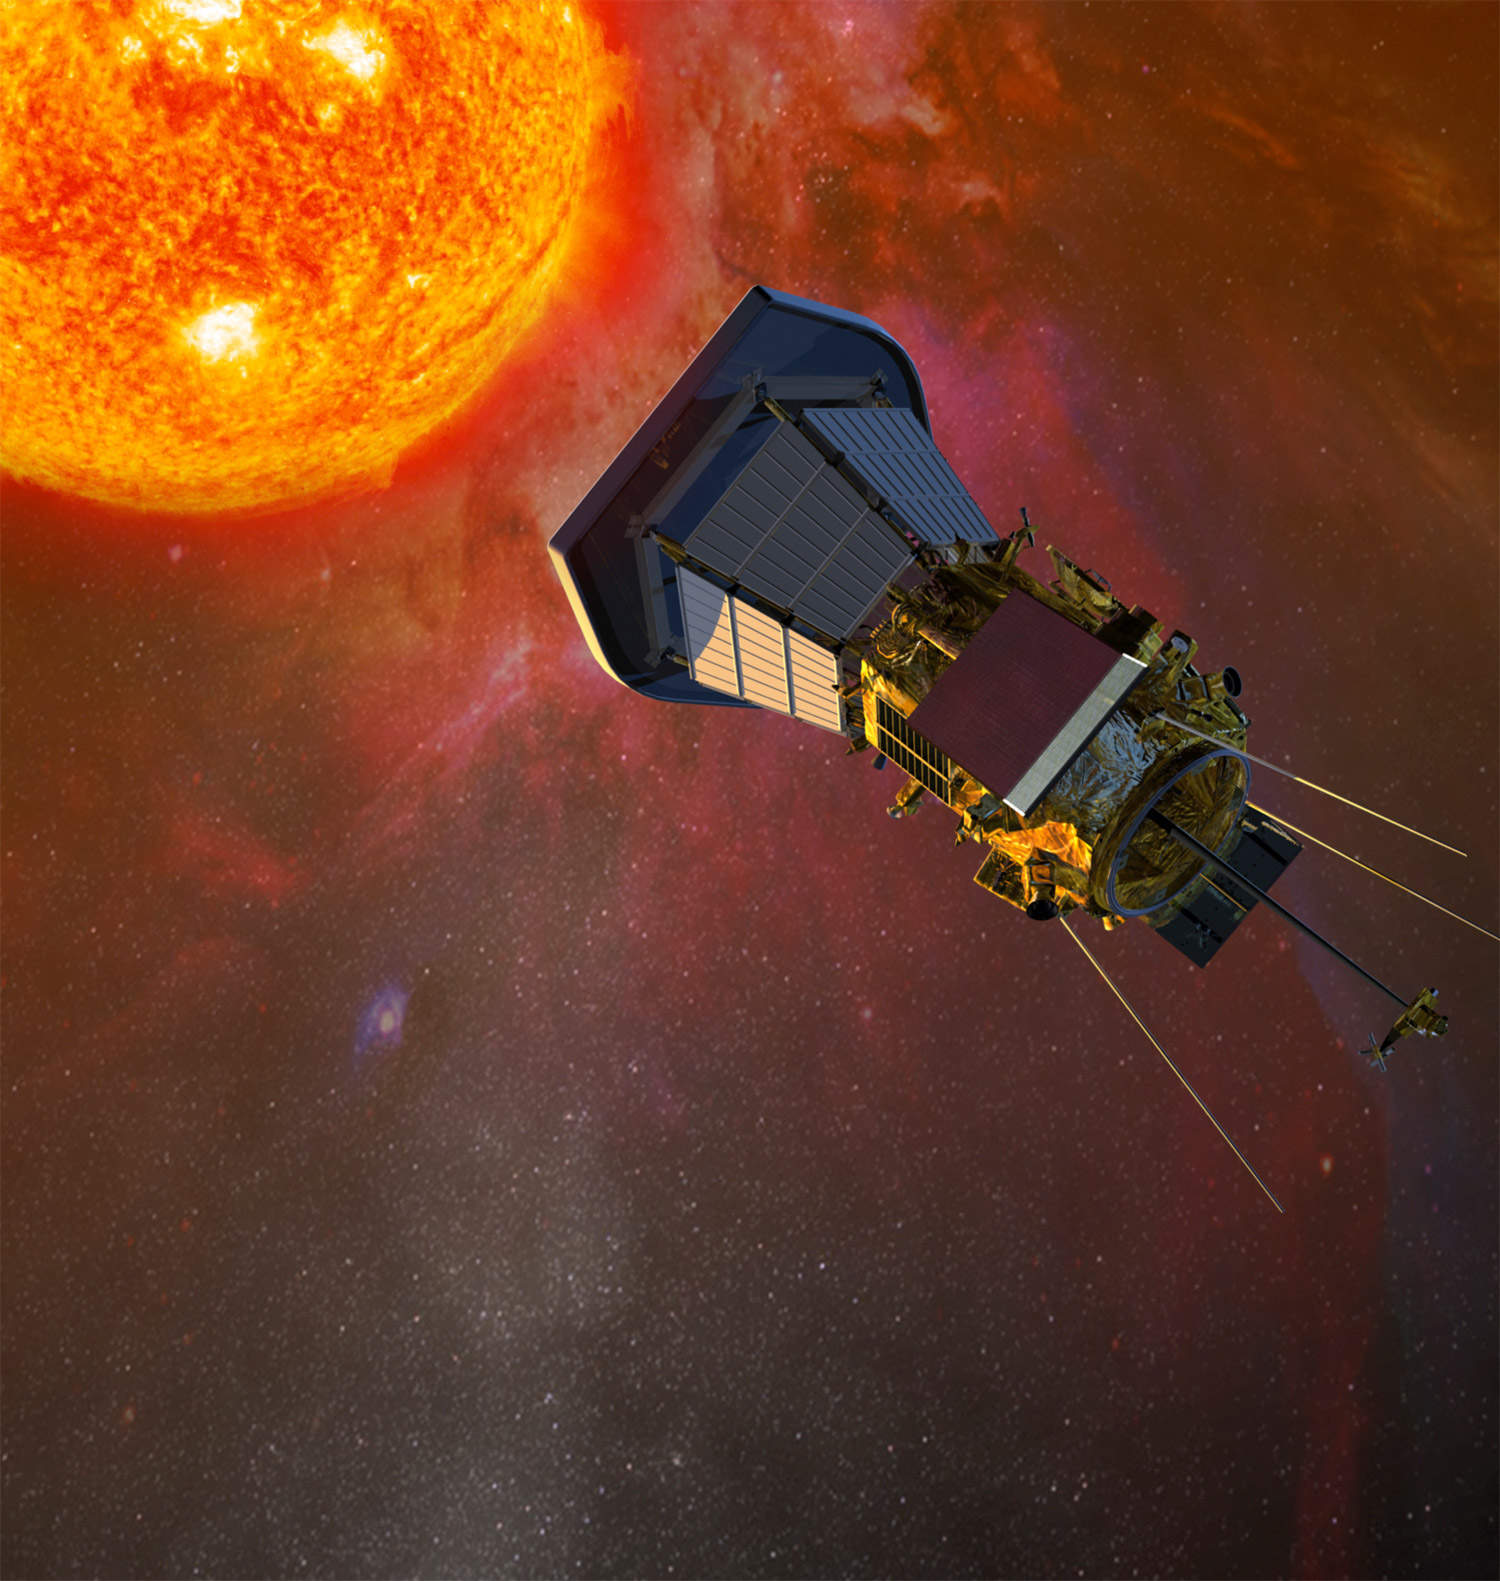 Située à moins de 7 millions de kilomètres du Soleil, l'orbite de Solar Probe Plus s'apparente à un promontoire exceptionnel pour l’observer et mieux le comprendre. Crédit Nasa